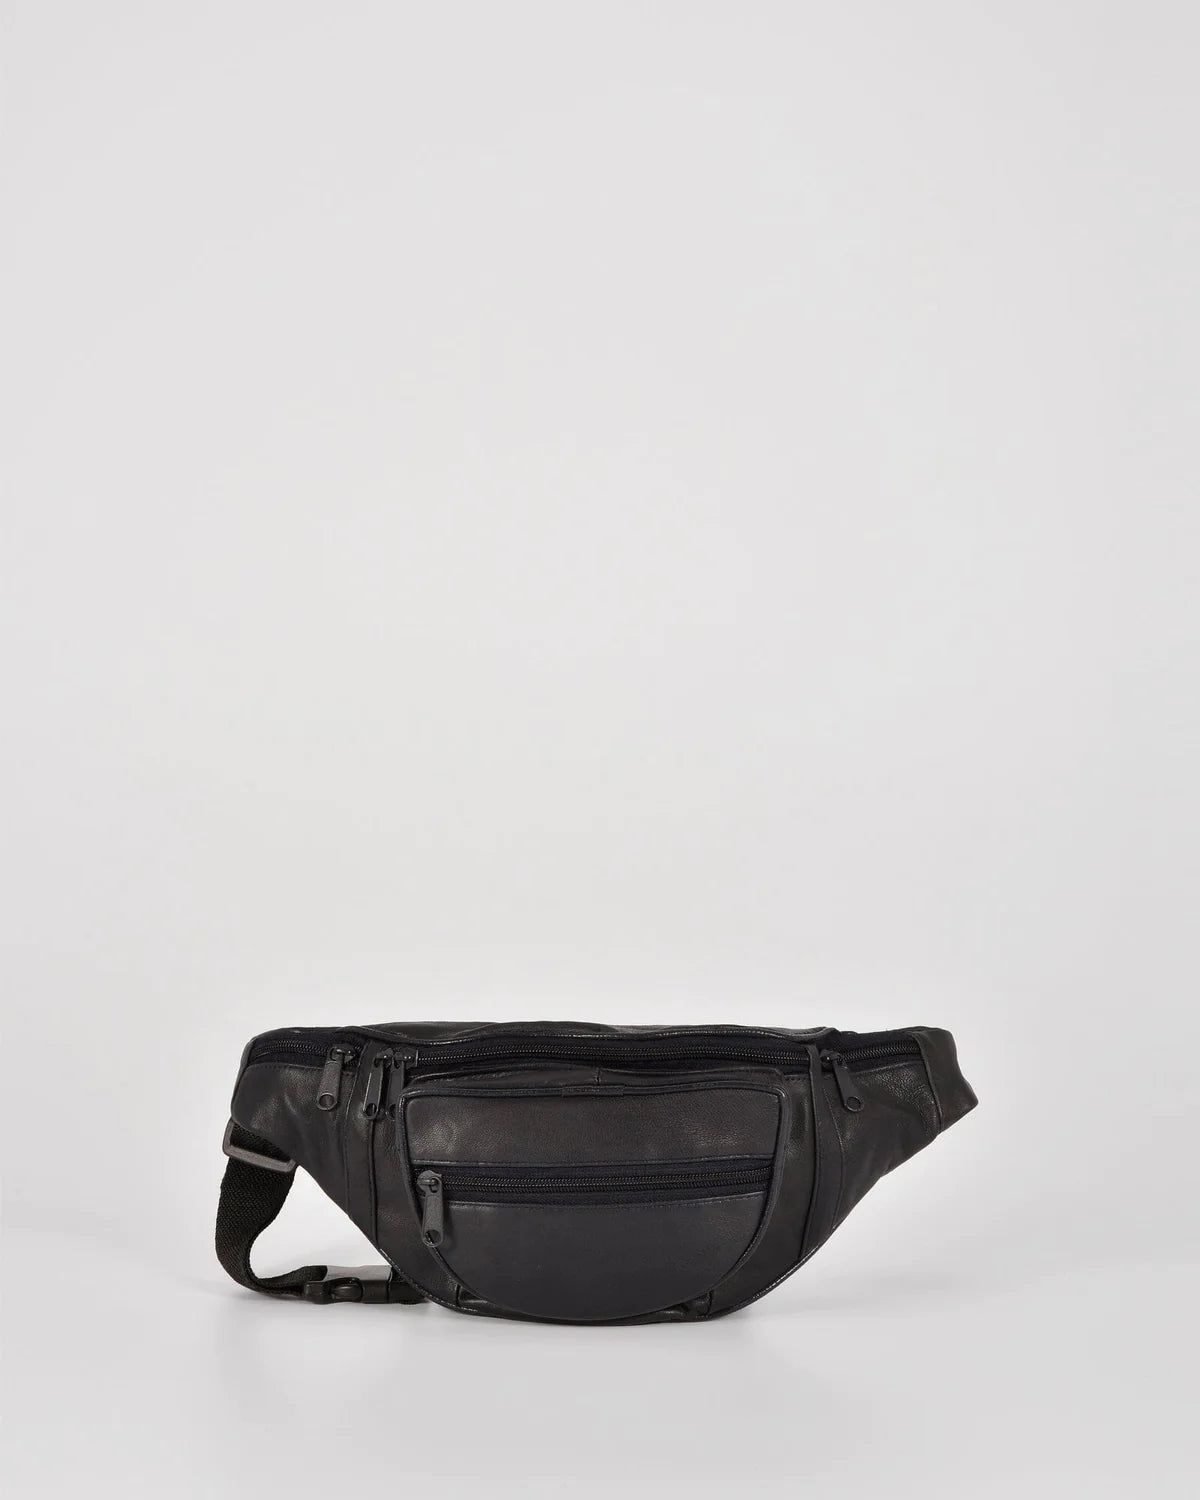 Cobb & Co - Leather Waist bag - rainbowbags